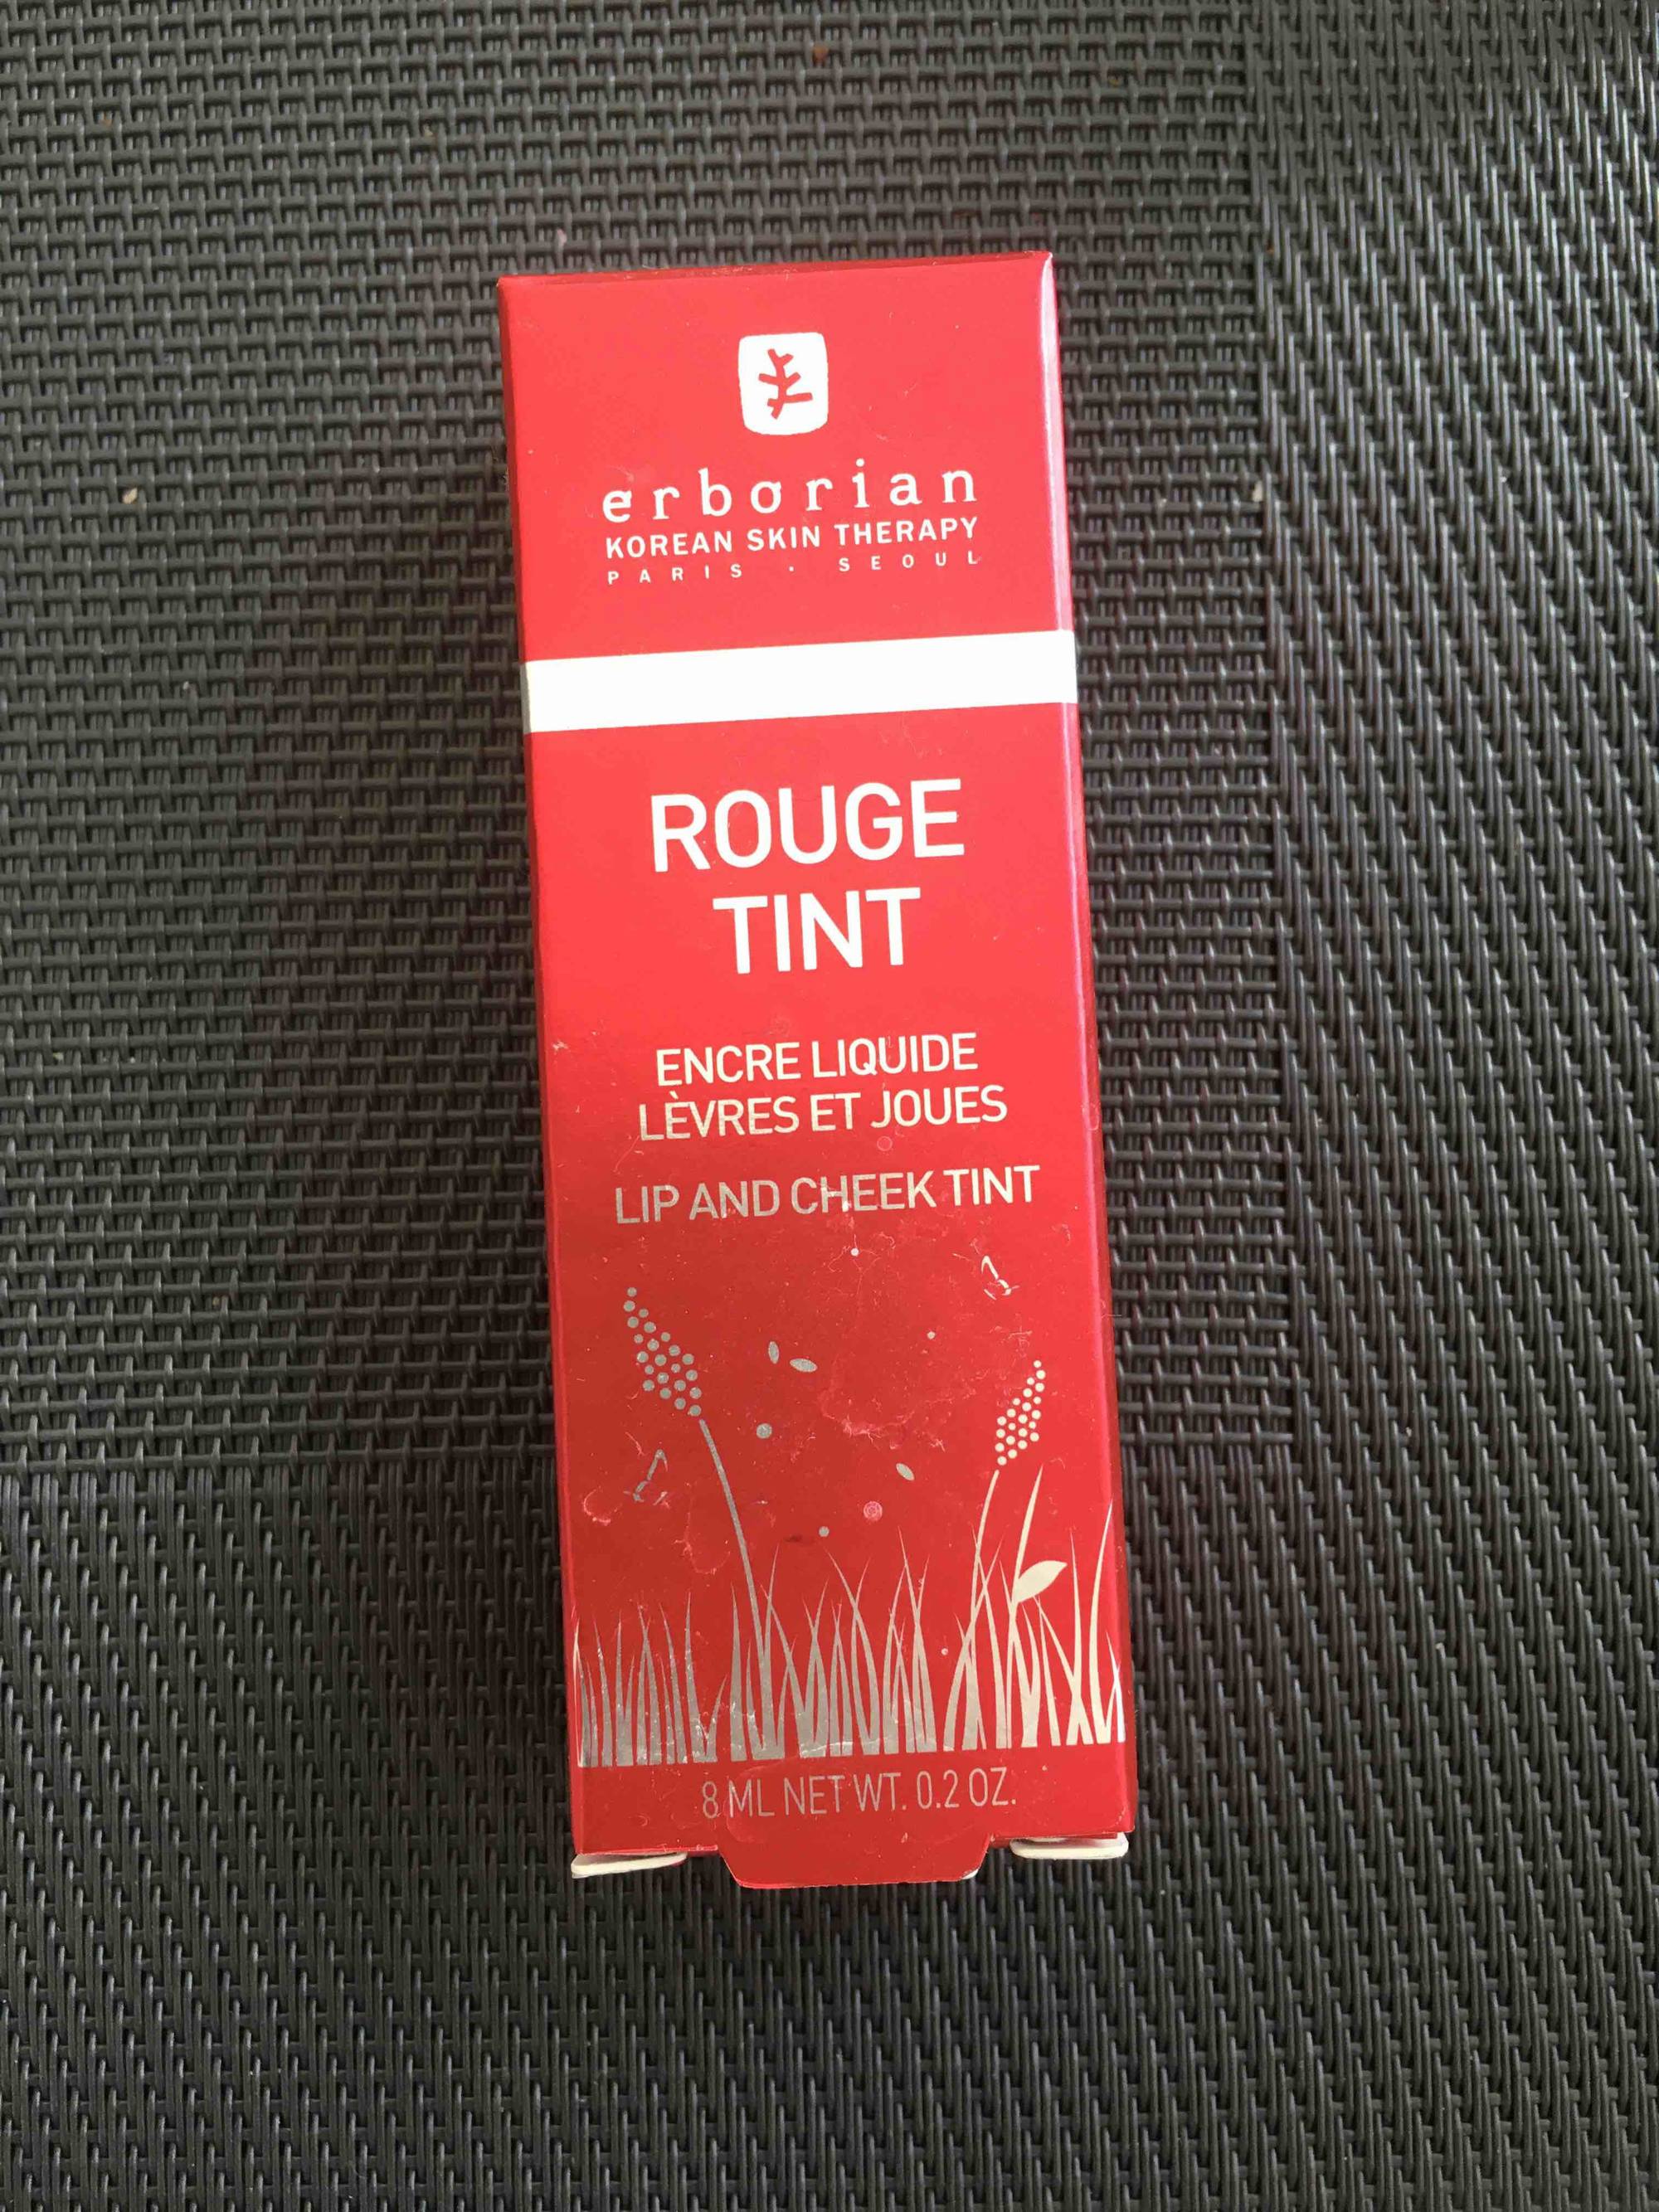 ERBORIAN - Rouge tint - Encre liquide lèvres et joues